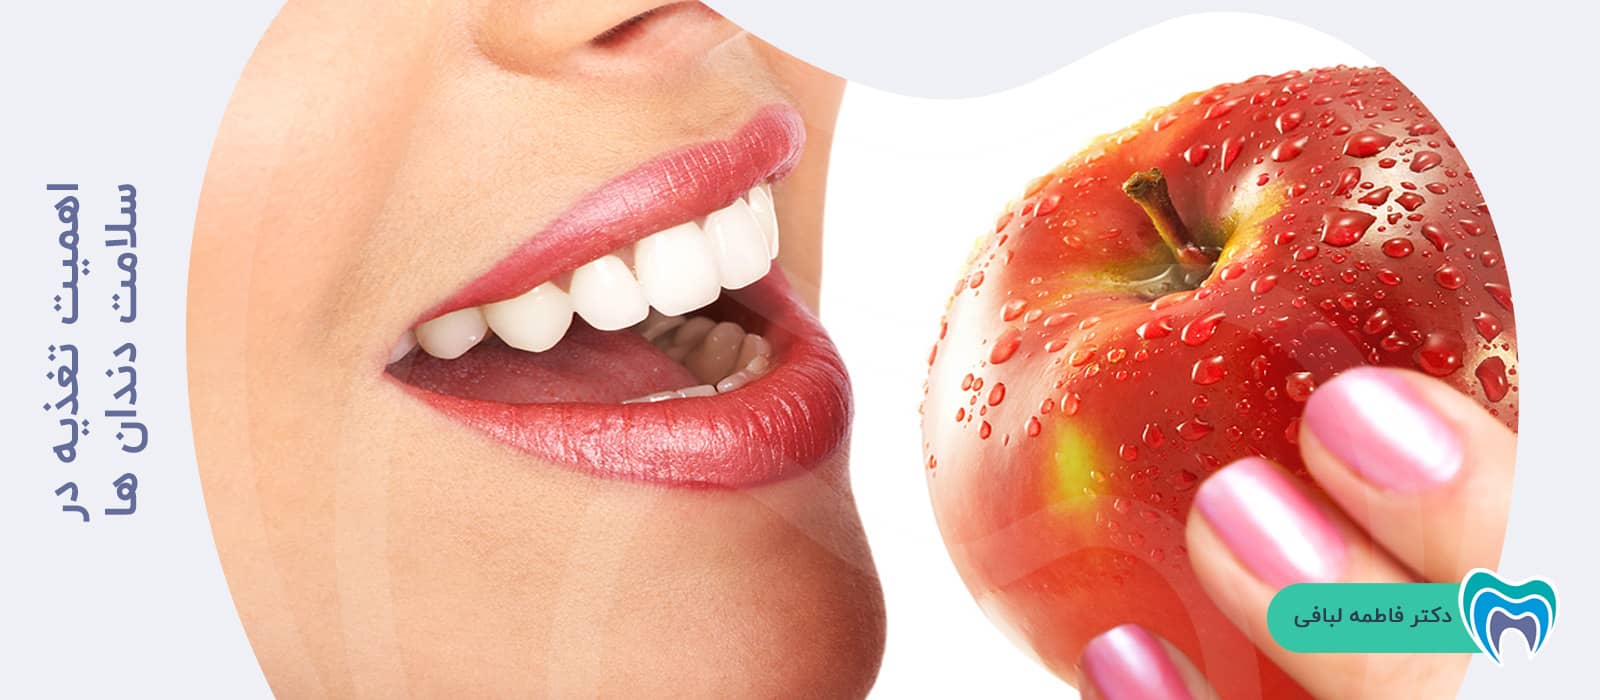 اهمیت تغذیه در سلامت دندان ها